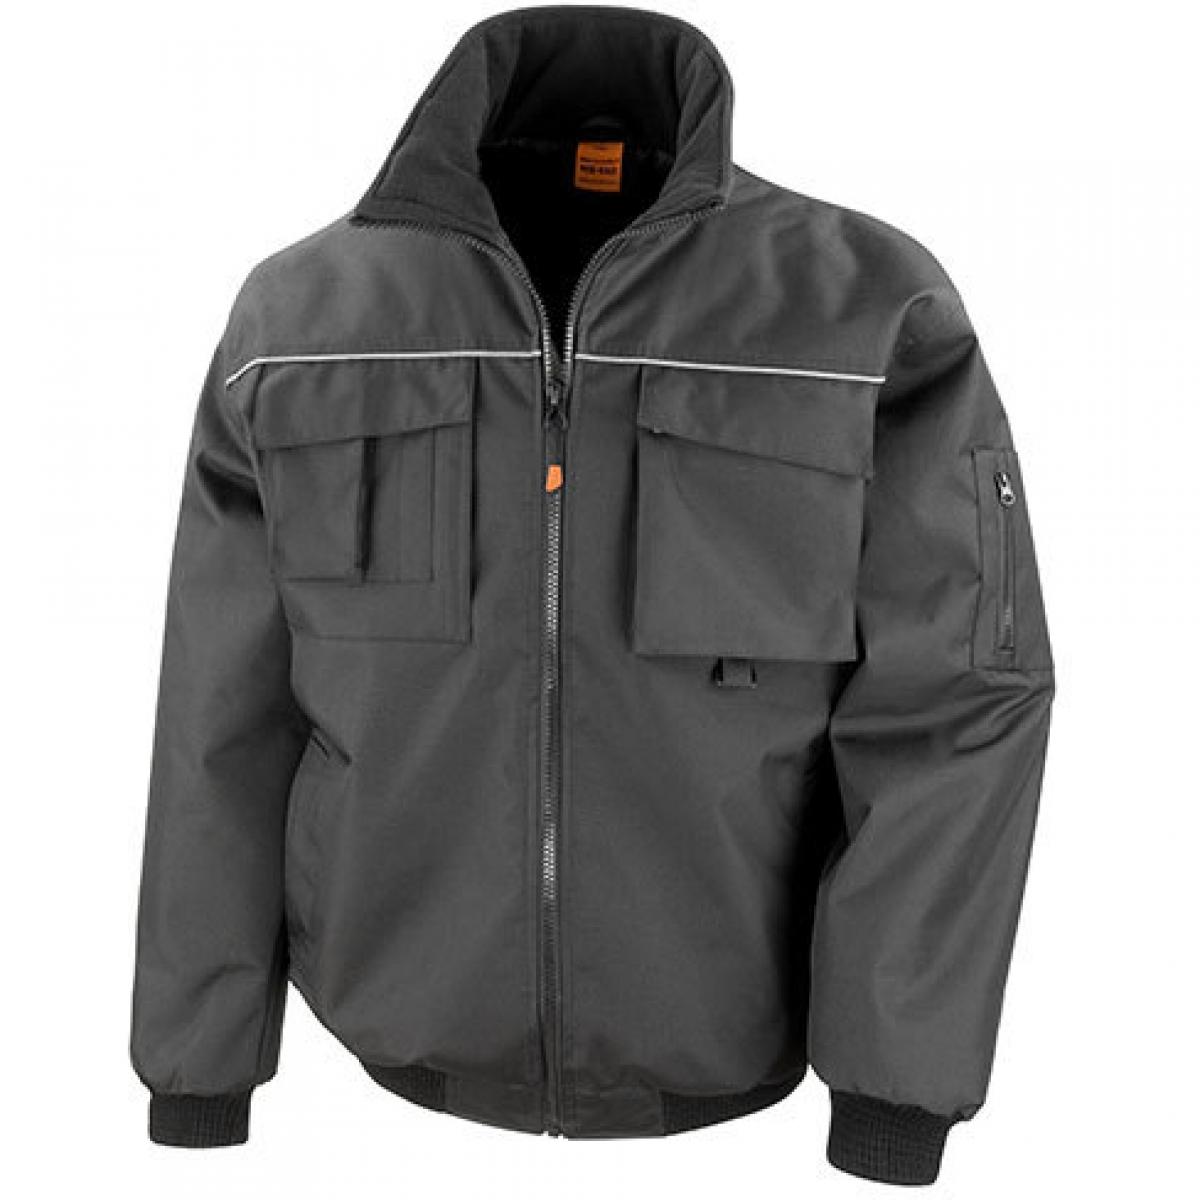 Hersteller: Result WORK-GUARD Herstellernummer: R300X Artikelbezeichnung: Sabre Pilot Herren Workwear Arbeits Jacke Farbe: Black